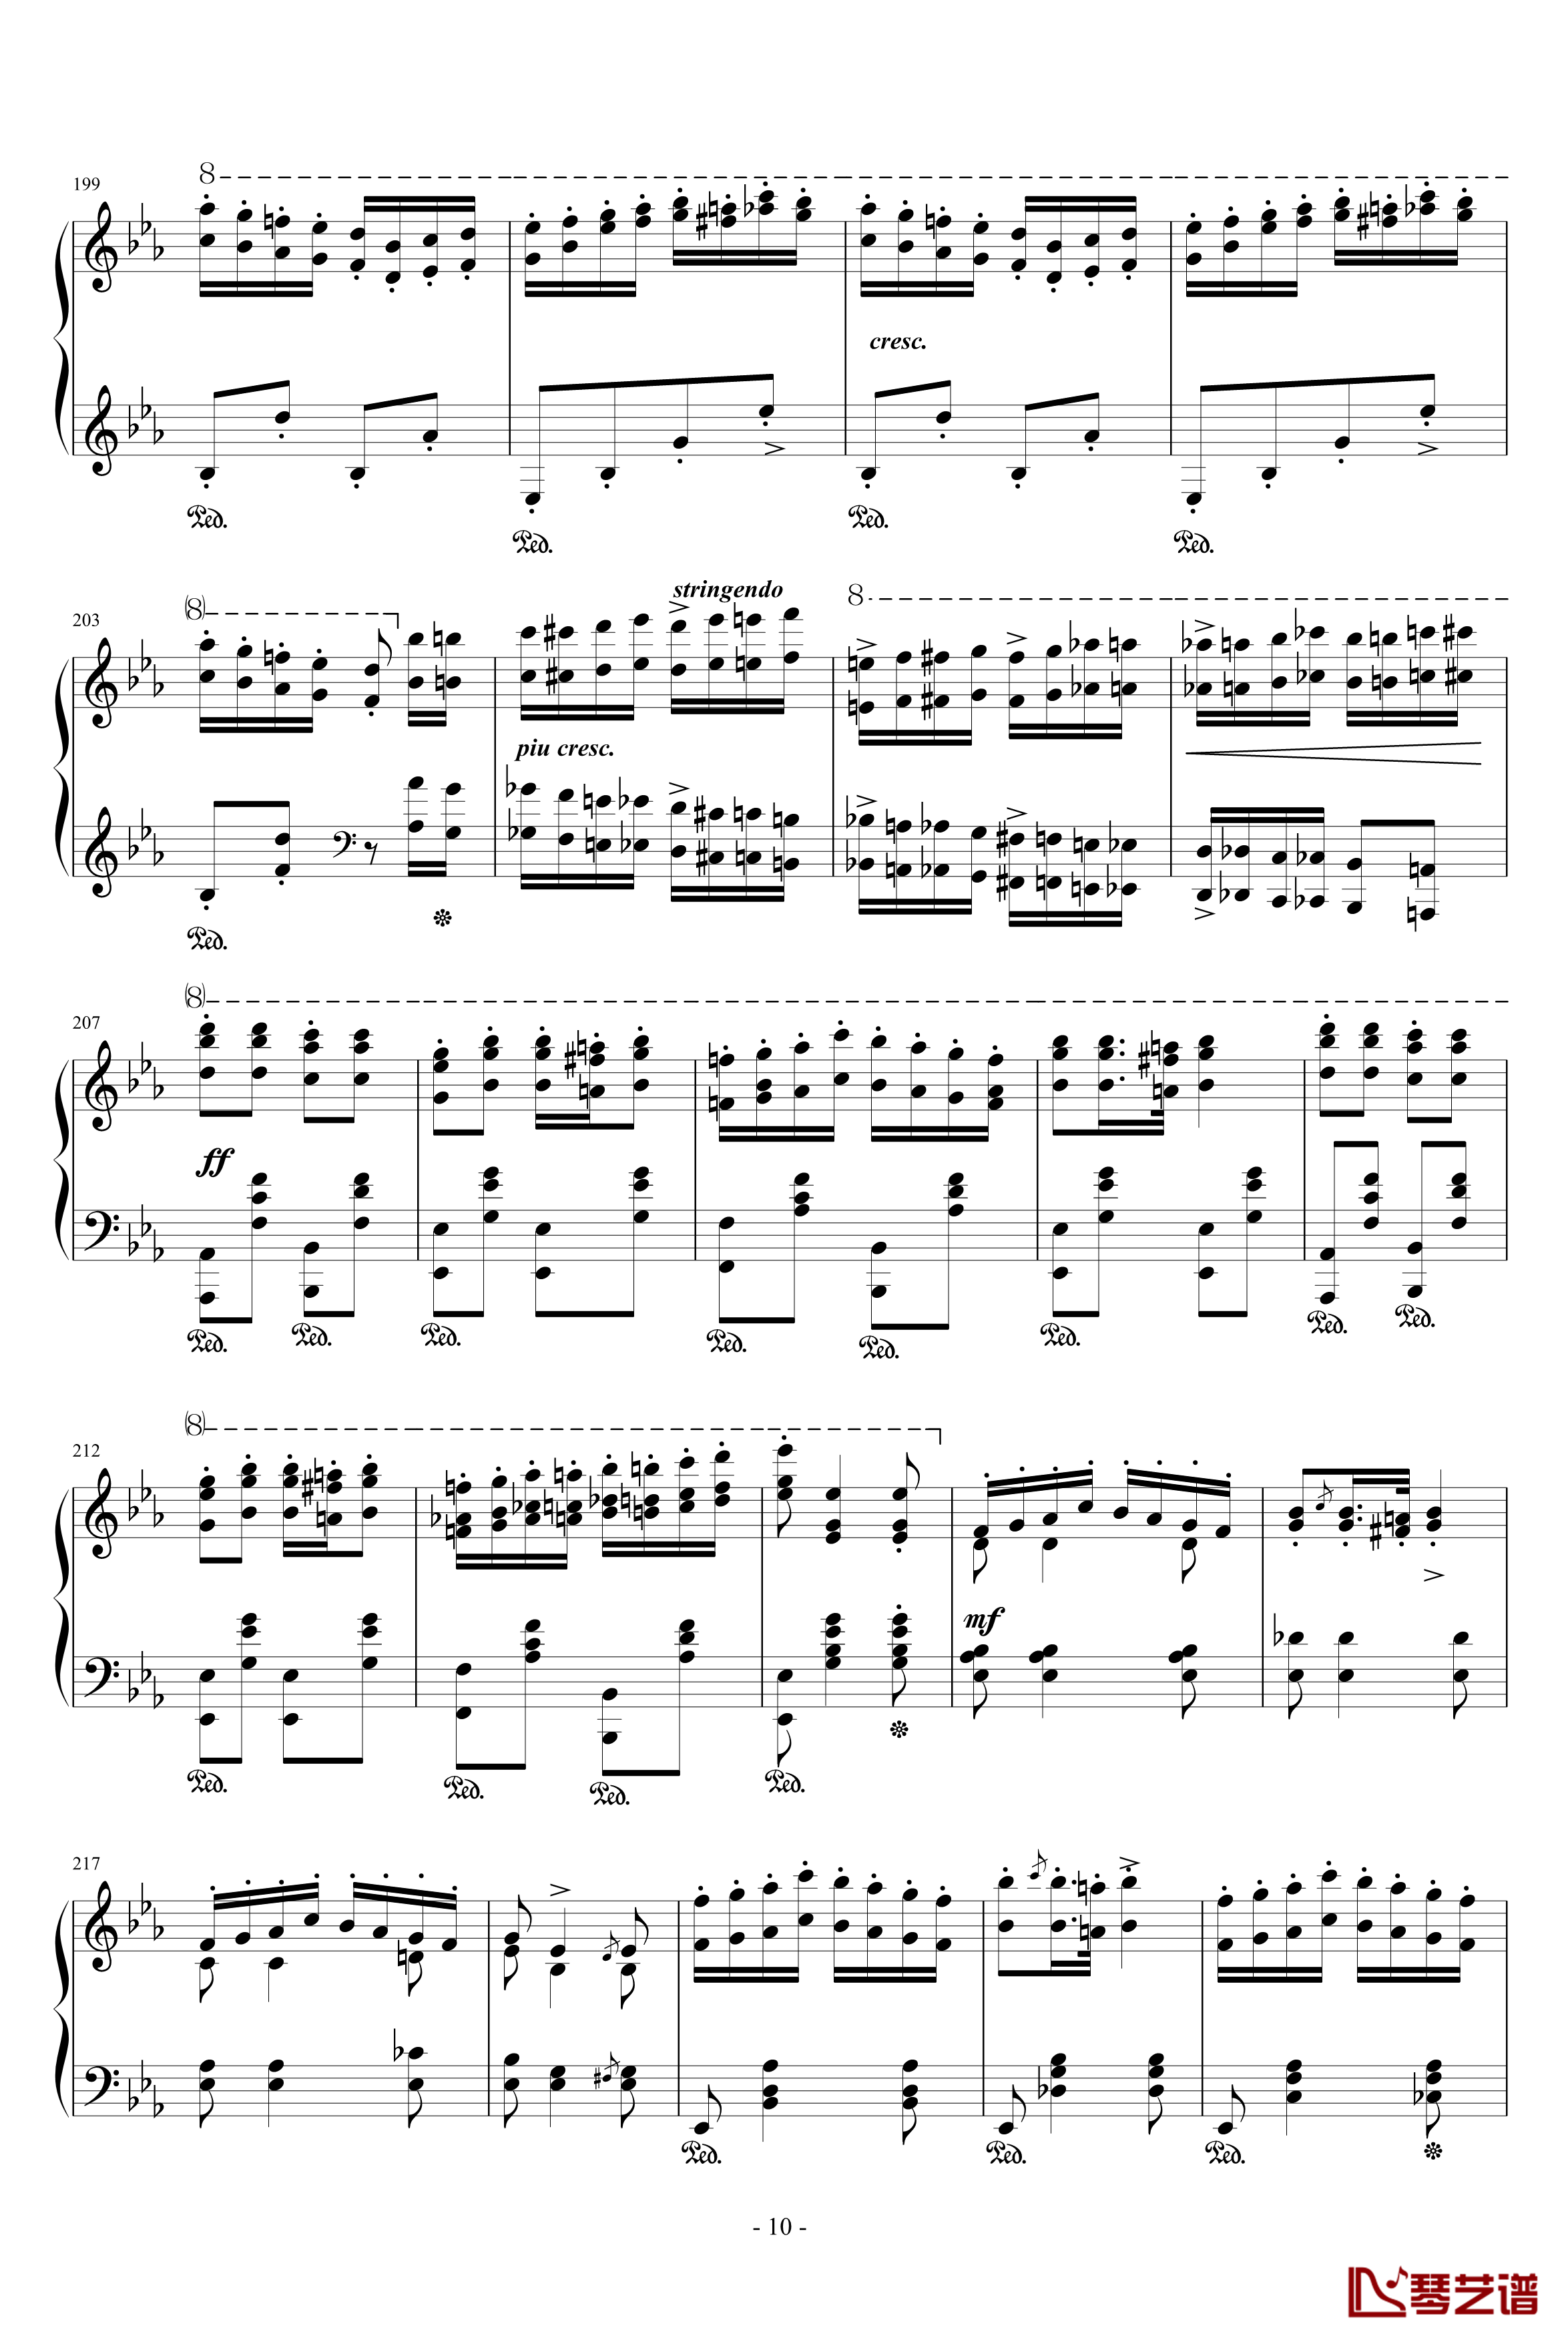 匈牙利狂想曲第9号钢琴谱-19首匈狂里篇幅最浩大、技巧最艰深的作品之一-李斯特10